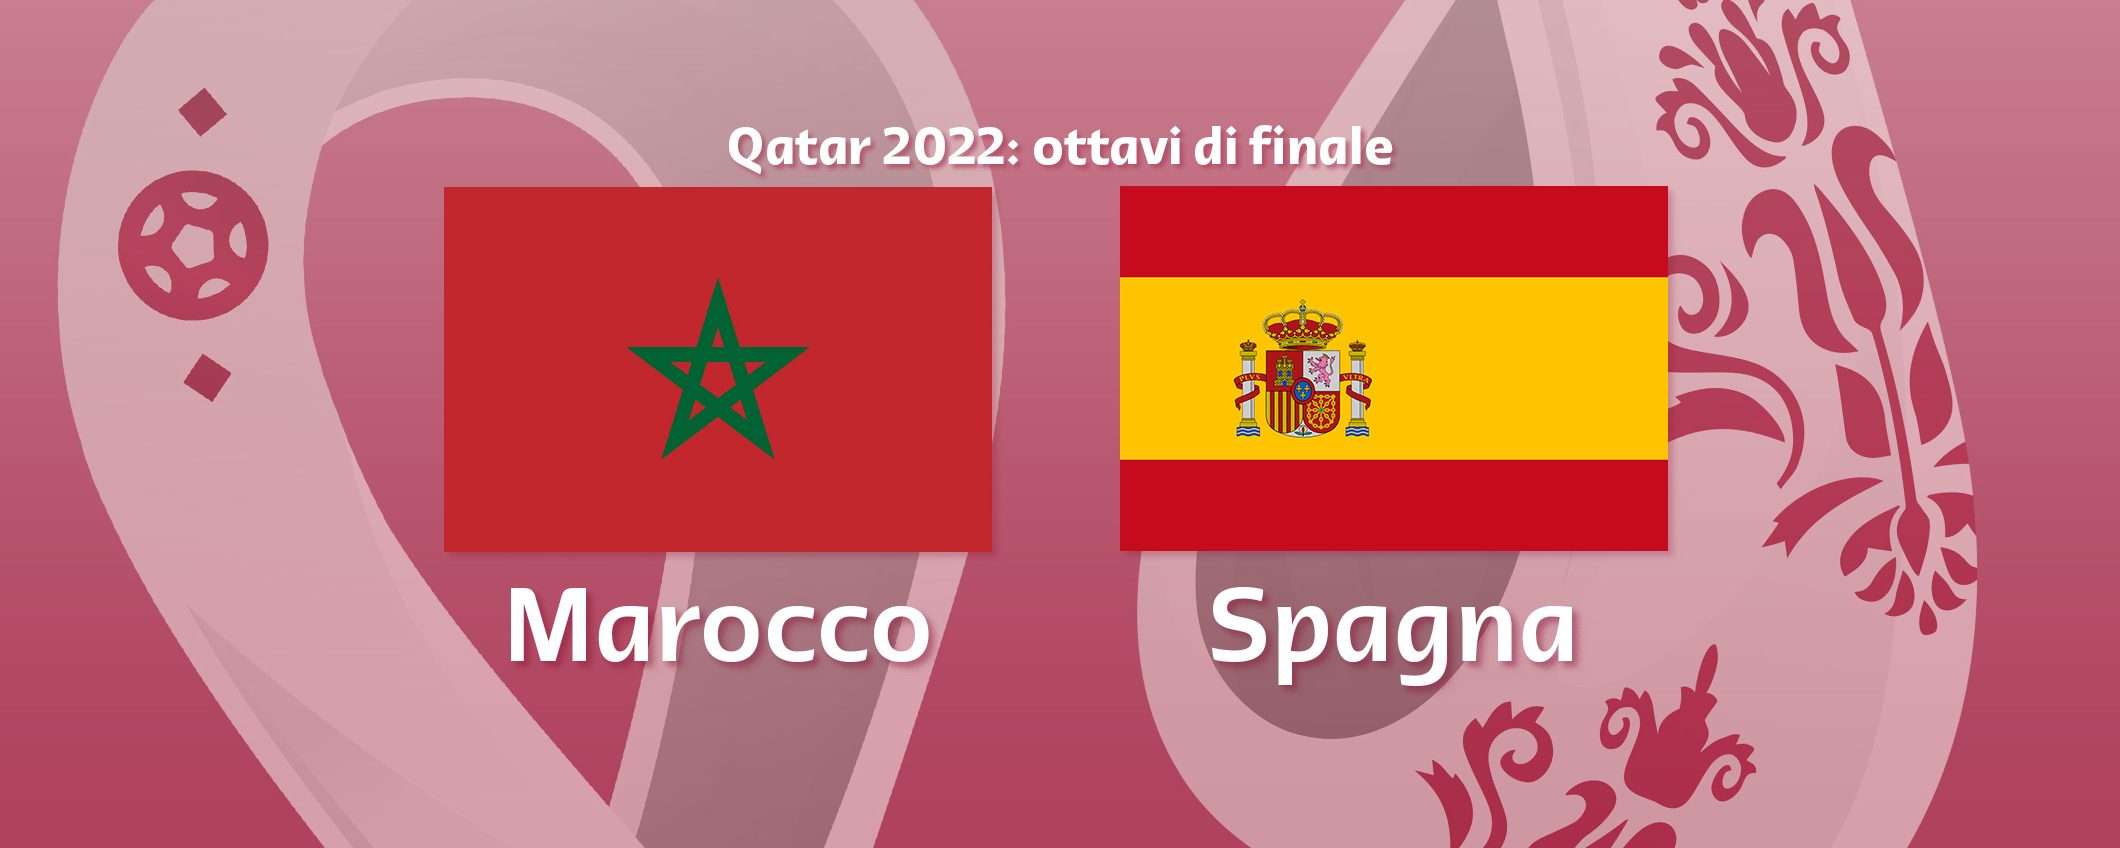 Come vedere Marocco-Spagna in streaming